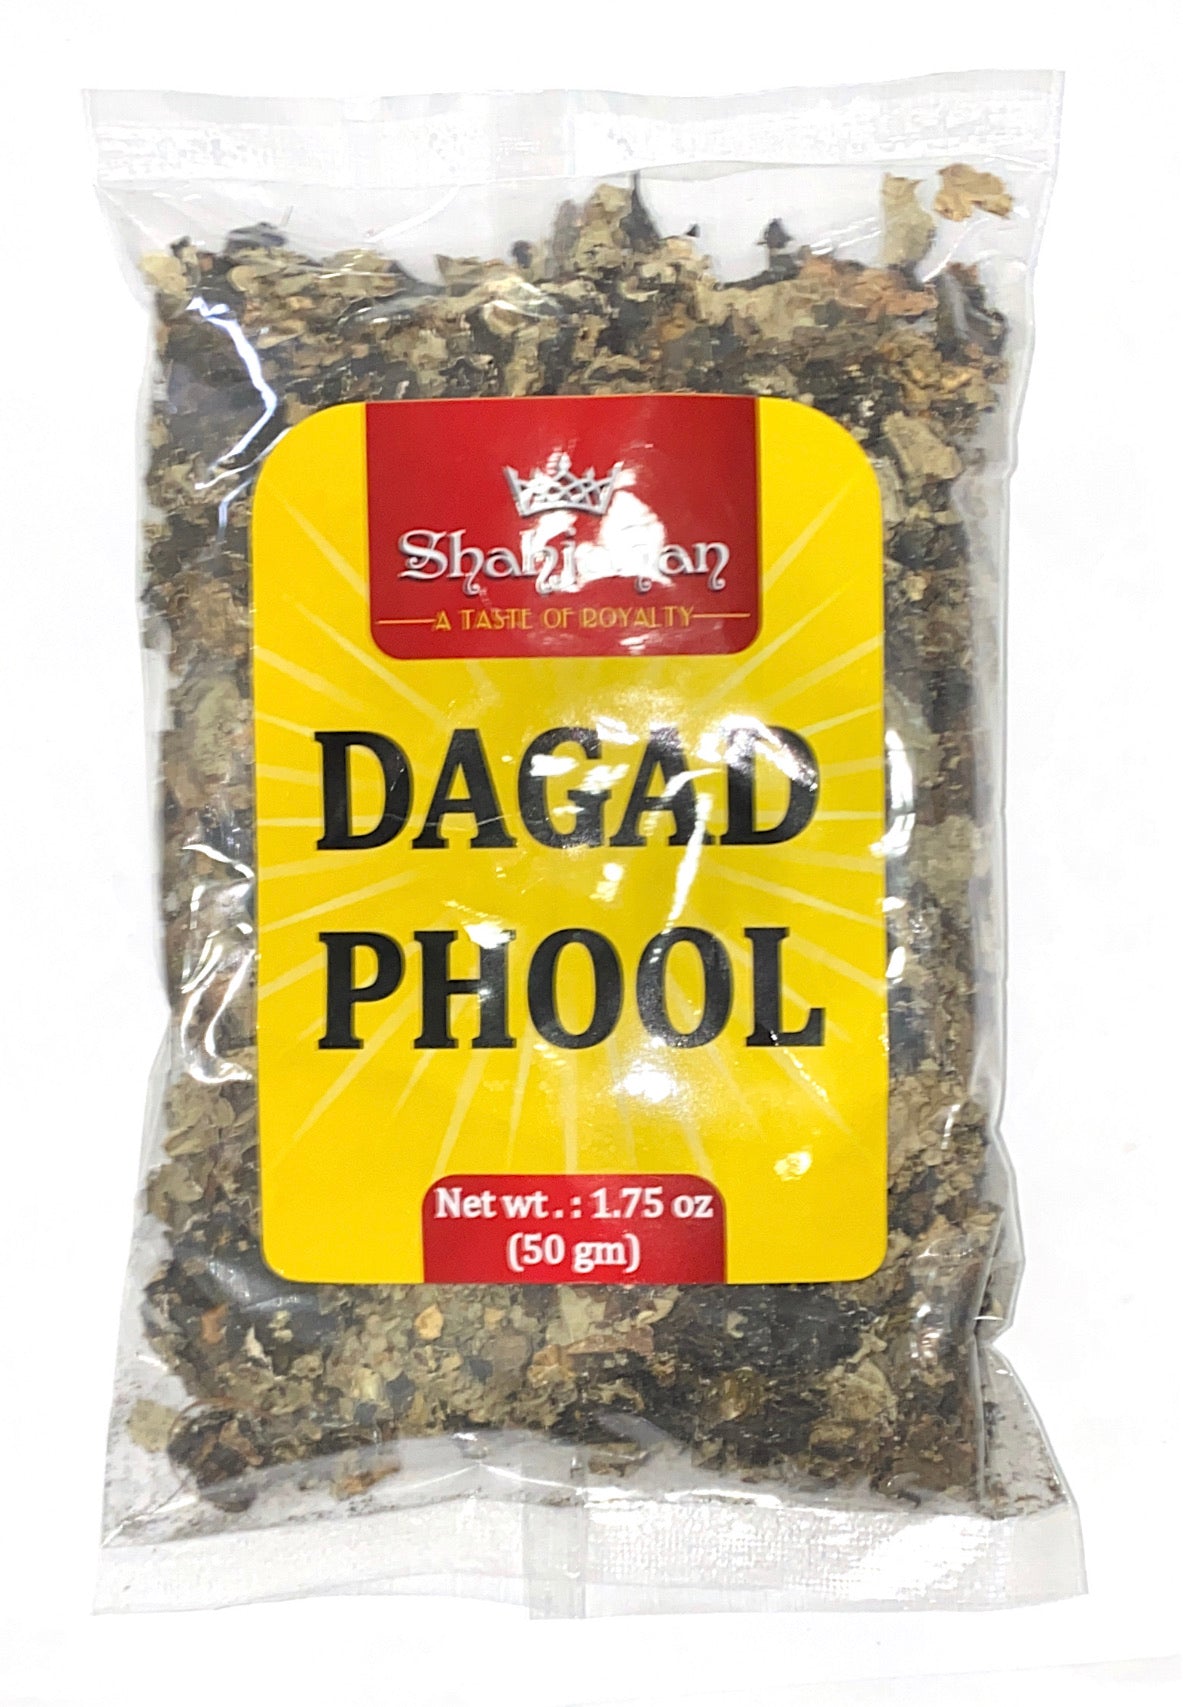 Dagad Phool